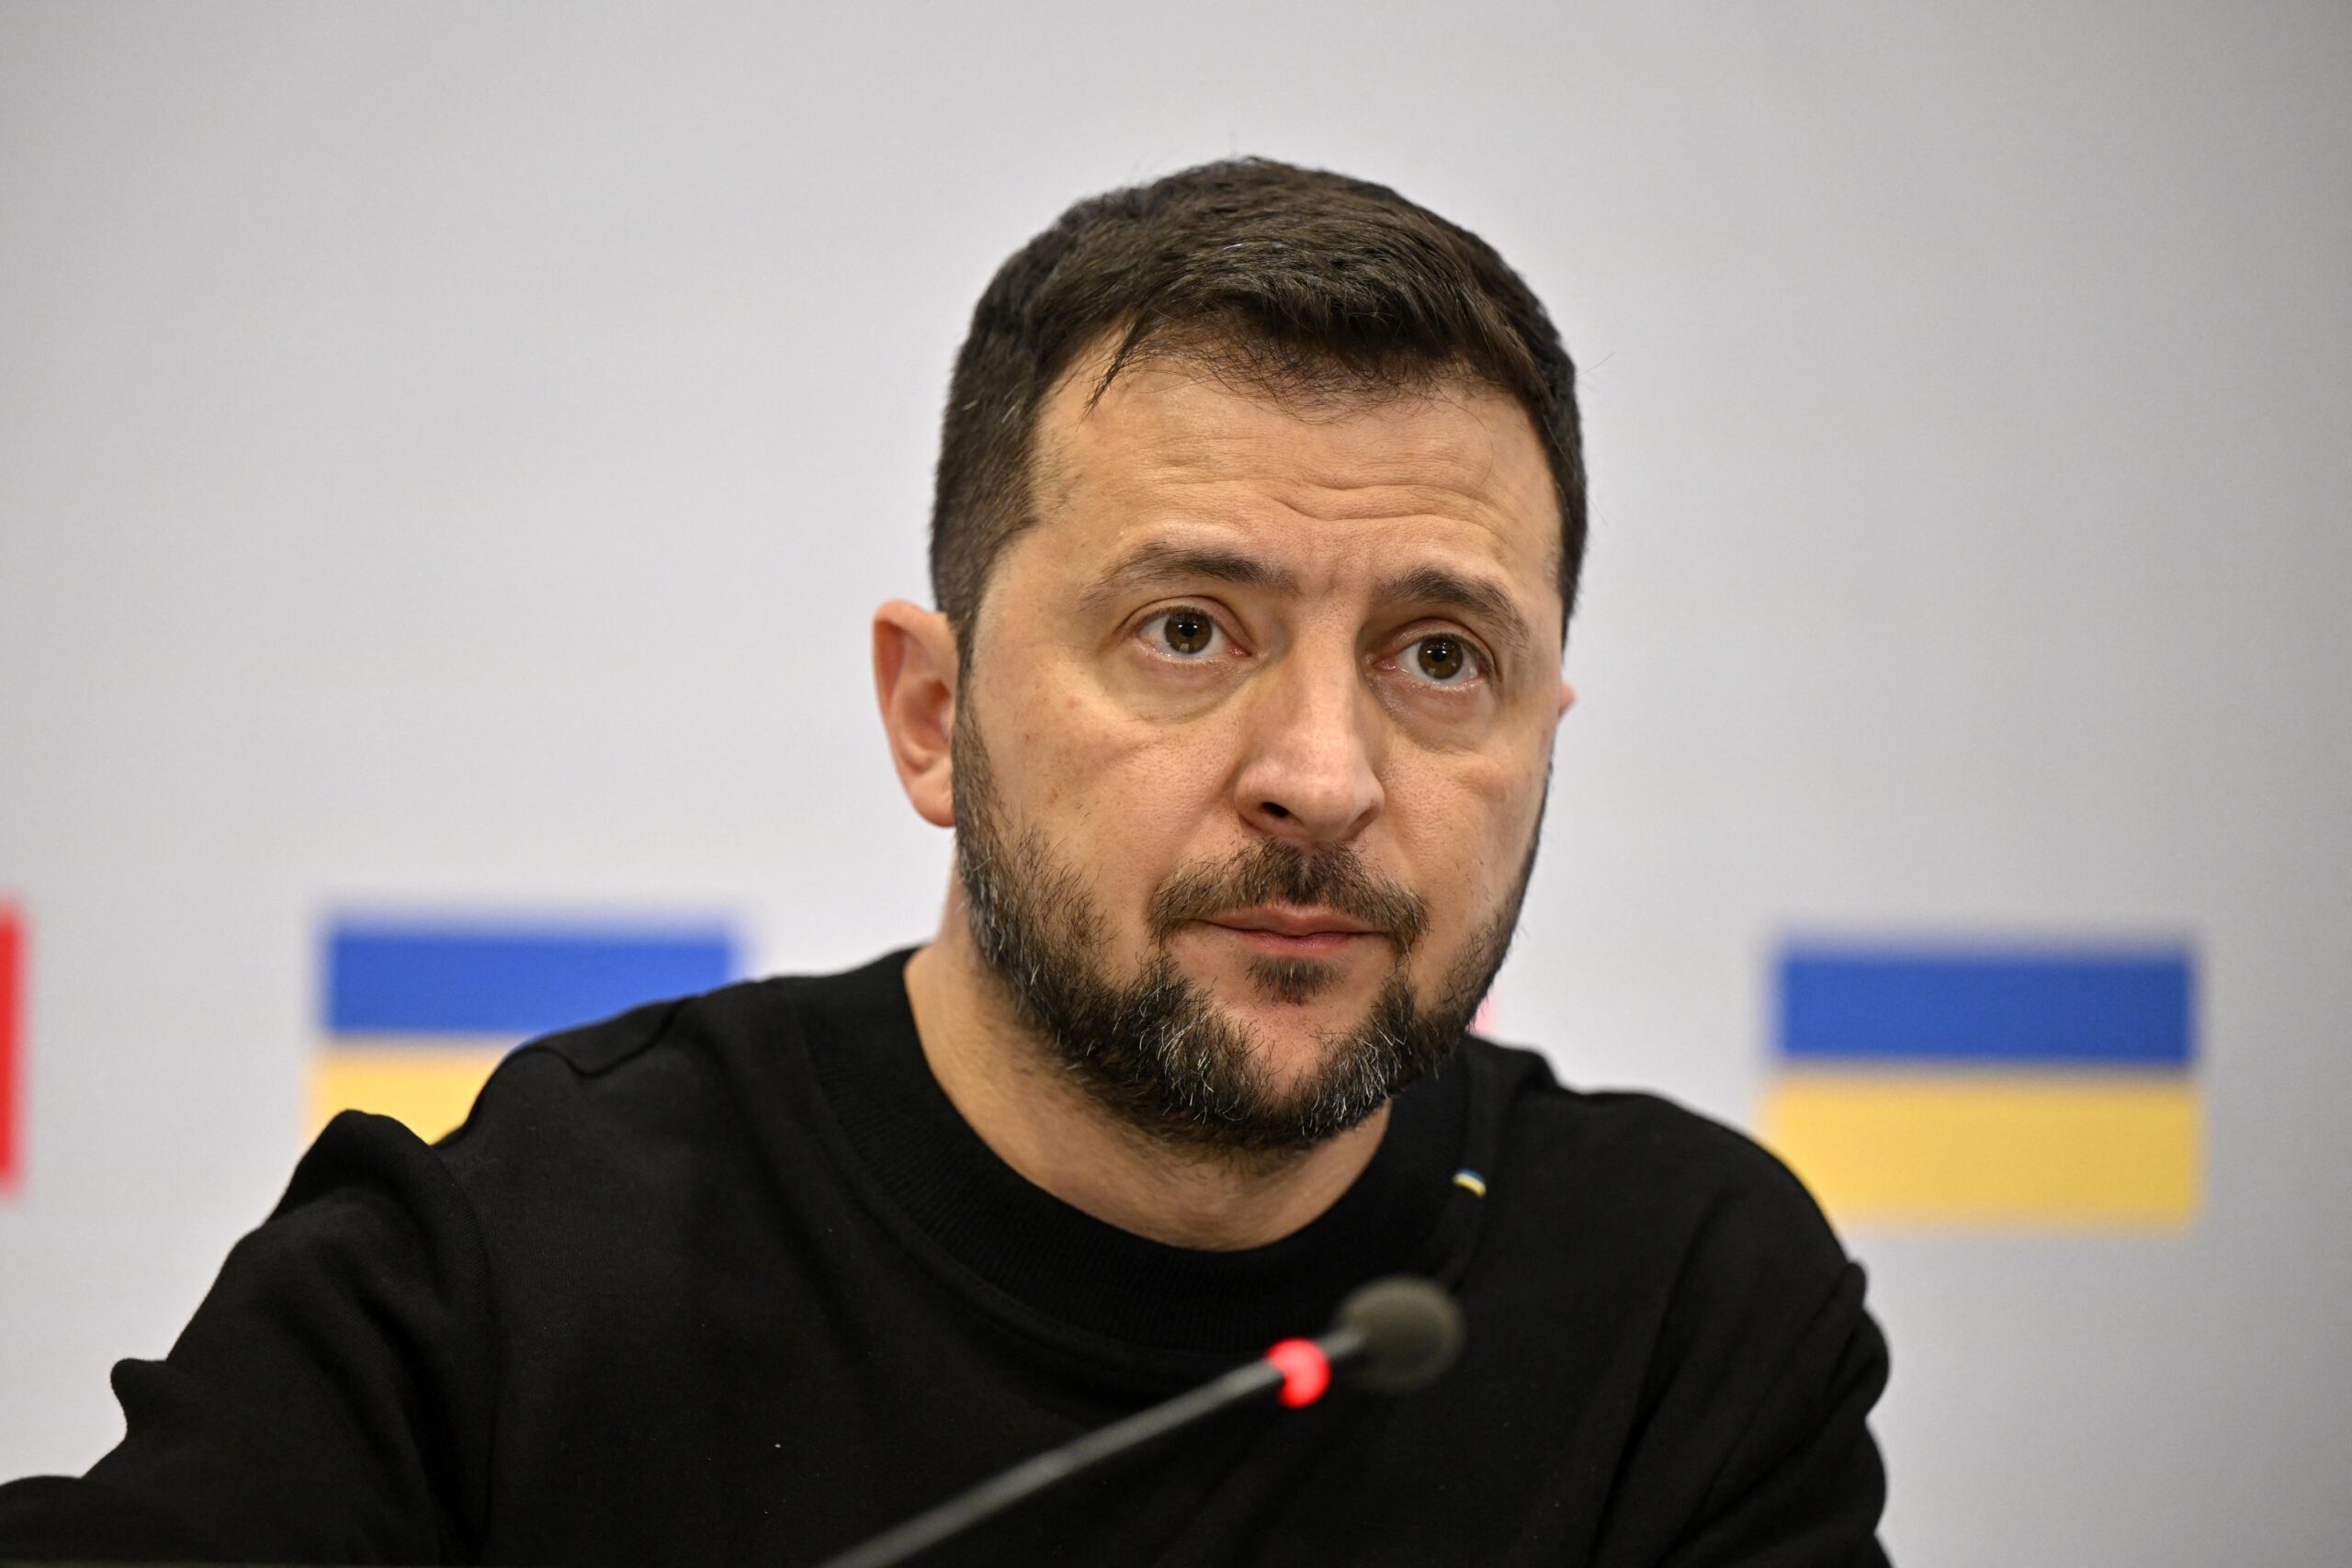 Volodymyr Zelensky attends a Brussels press conference